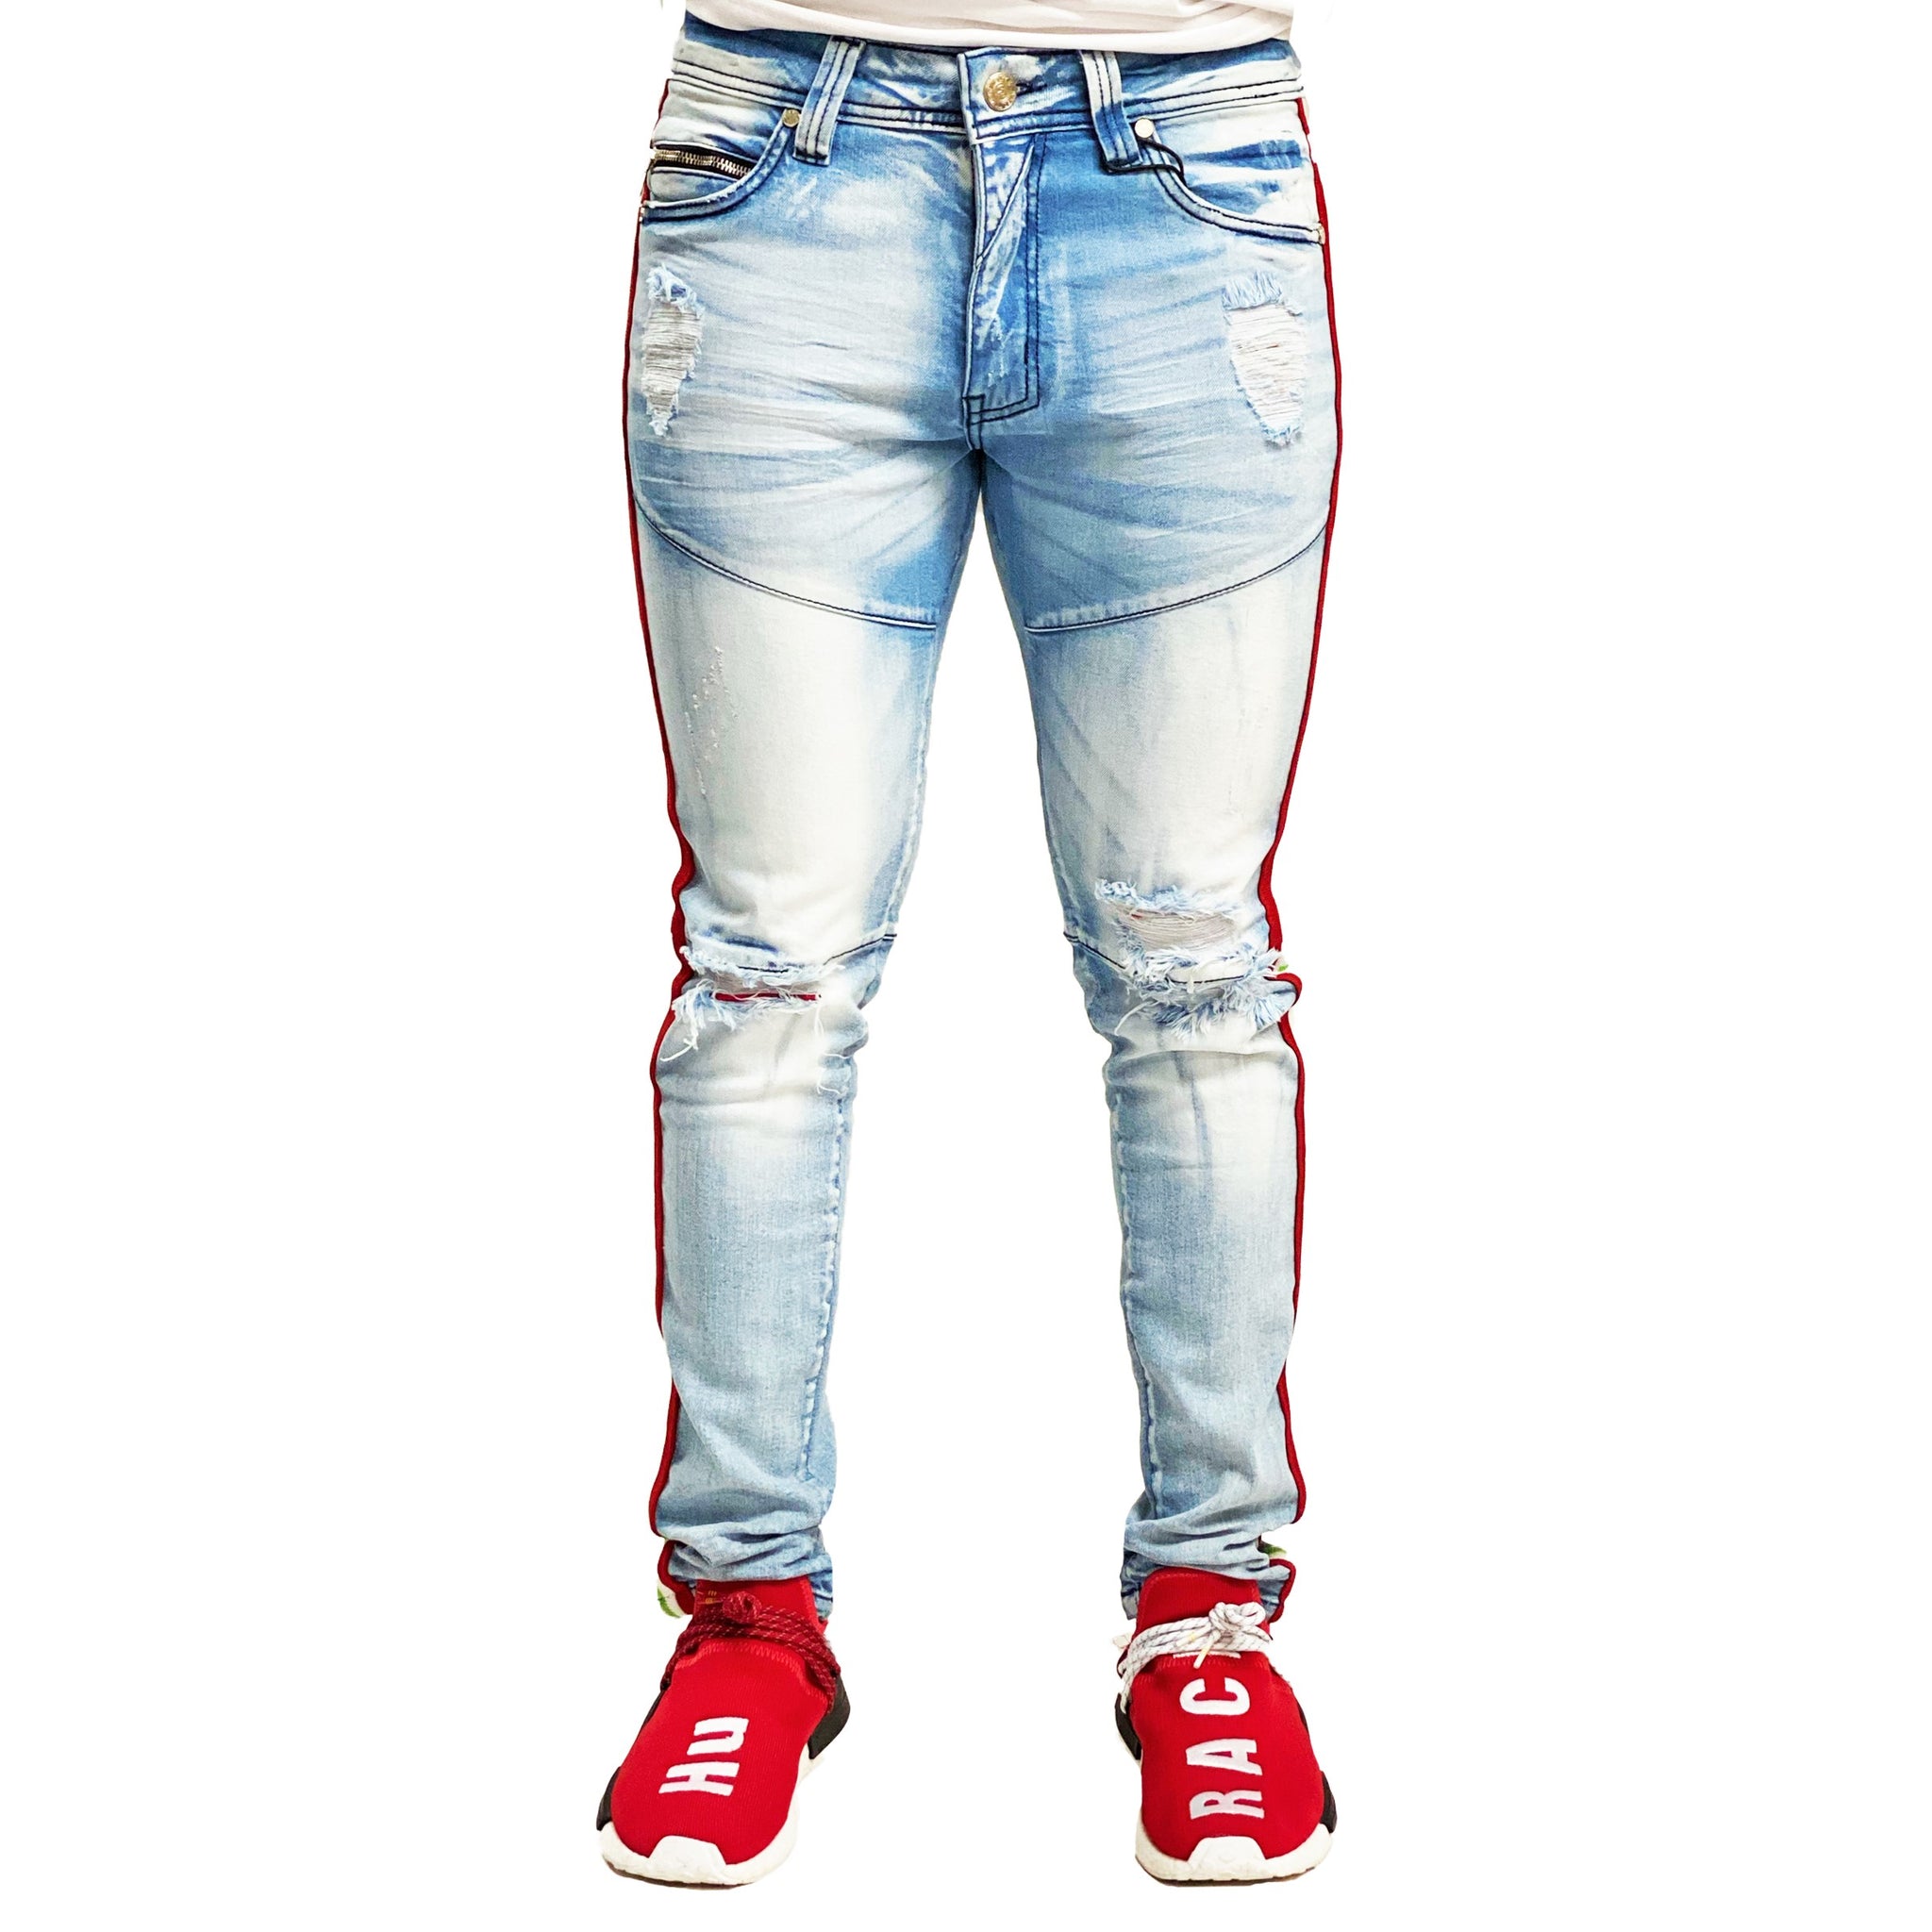 Hike Premium Men's Jeans - Elite Premium Denim